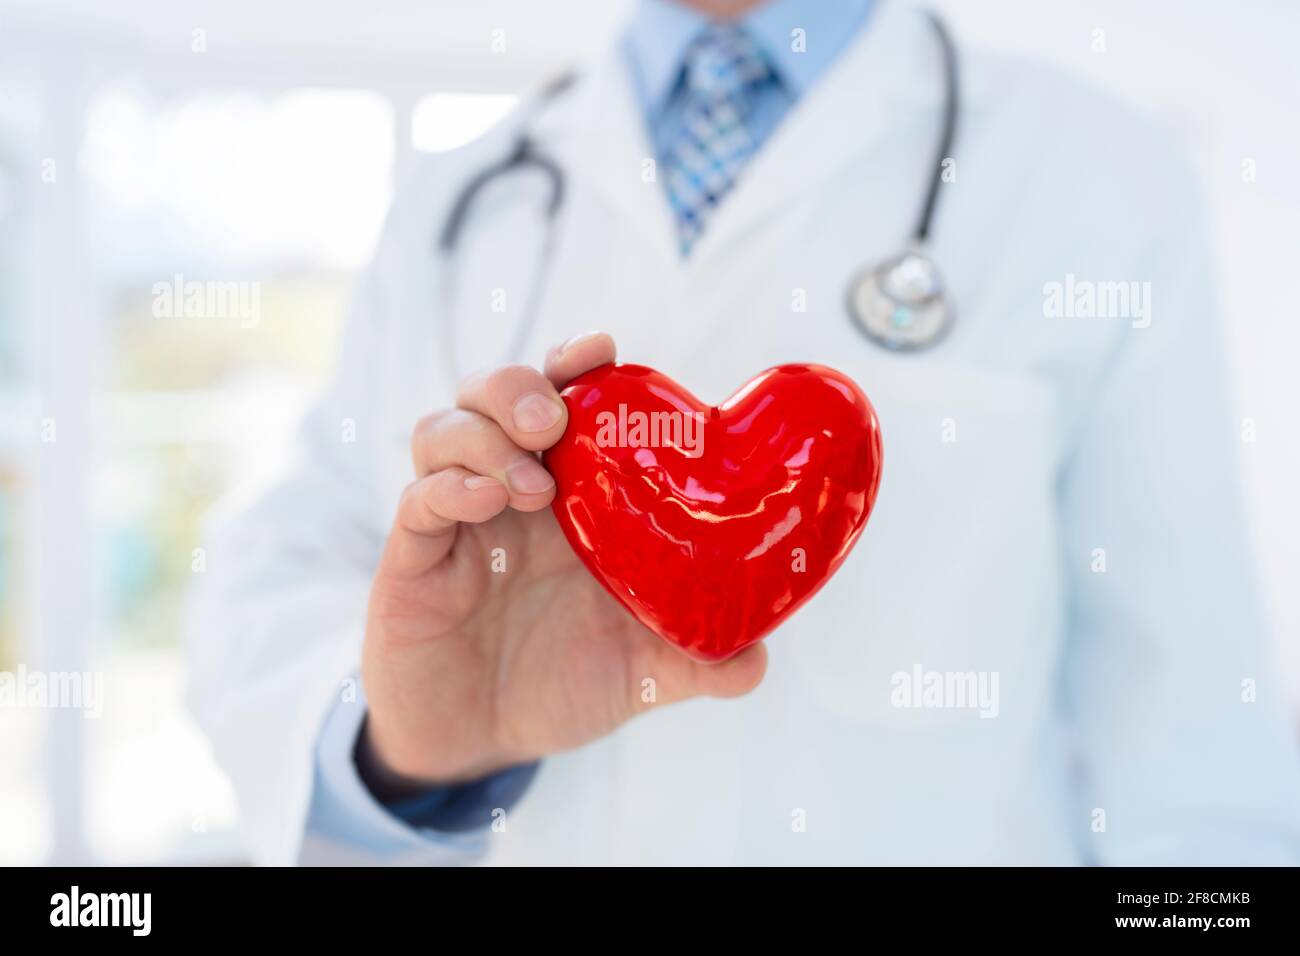 Arzt oder Kardiologe, der das Herz mit Sorgfalt in den Händen hält Krankenhausbüro Konzept für Gesundheitswesen und Diagnose medizinischer Herzpuls Testen Stockfoto